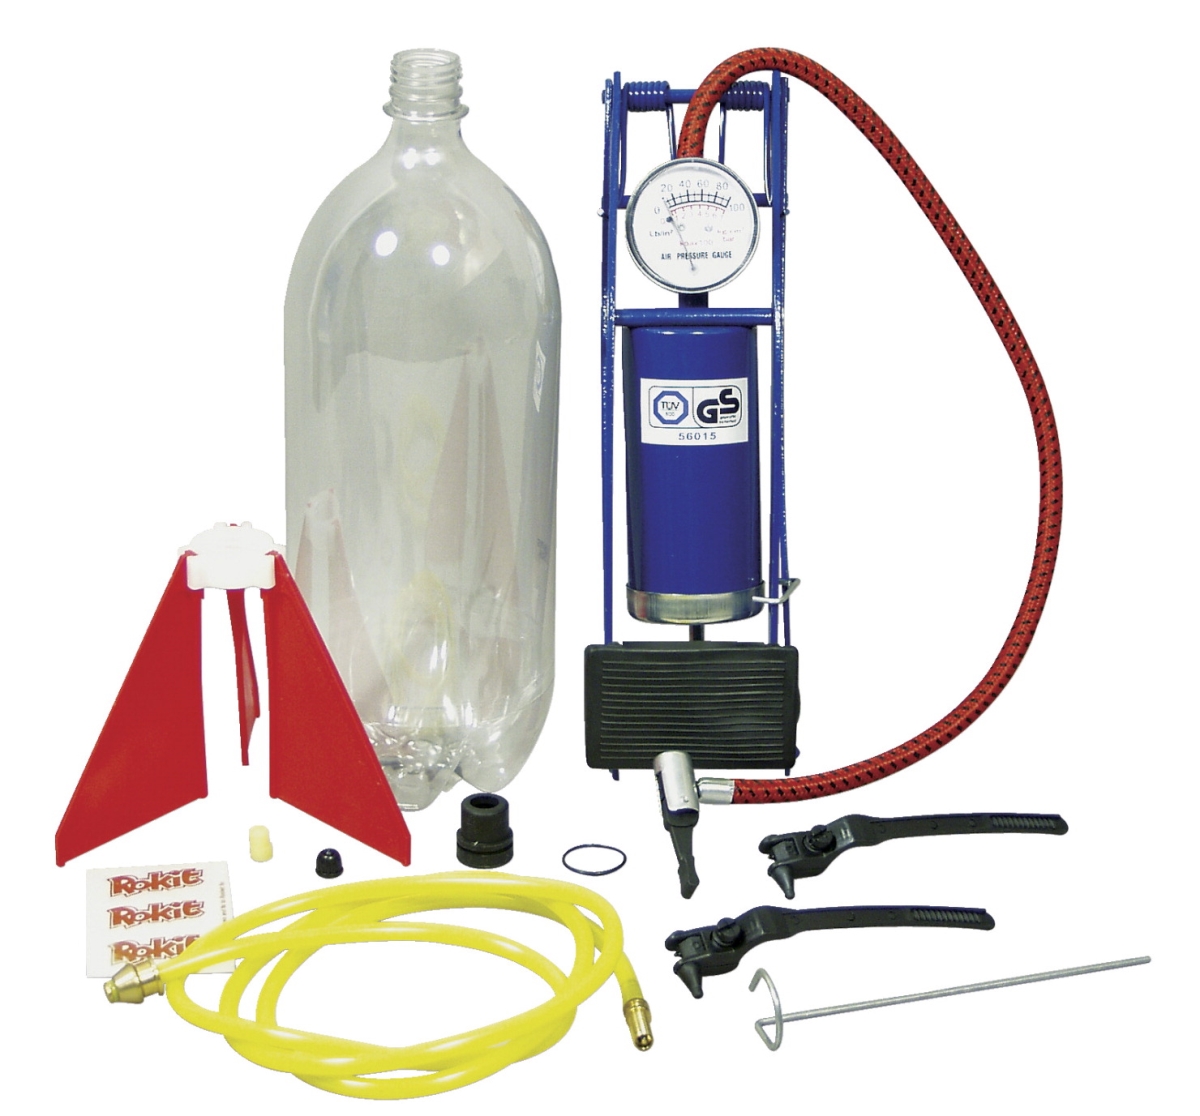 110-1209 Bottle Rocket Science Kit